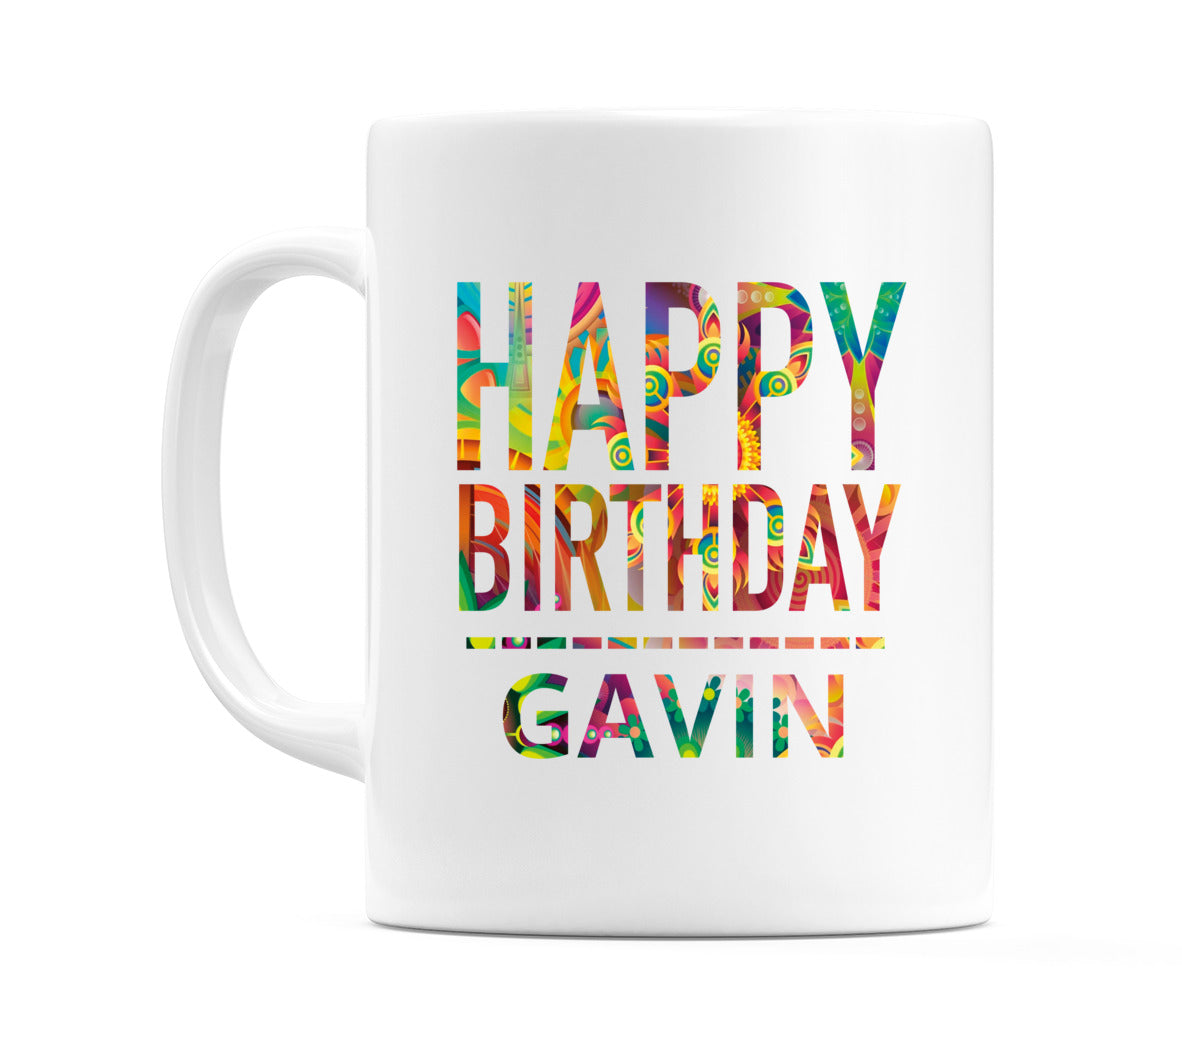 Happy Birthday Gavin (Tie Dye Effect) Mug Cup by WeDoMugs